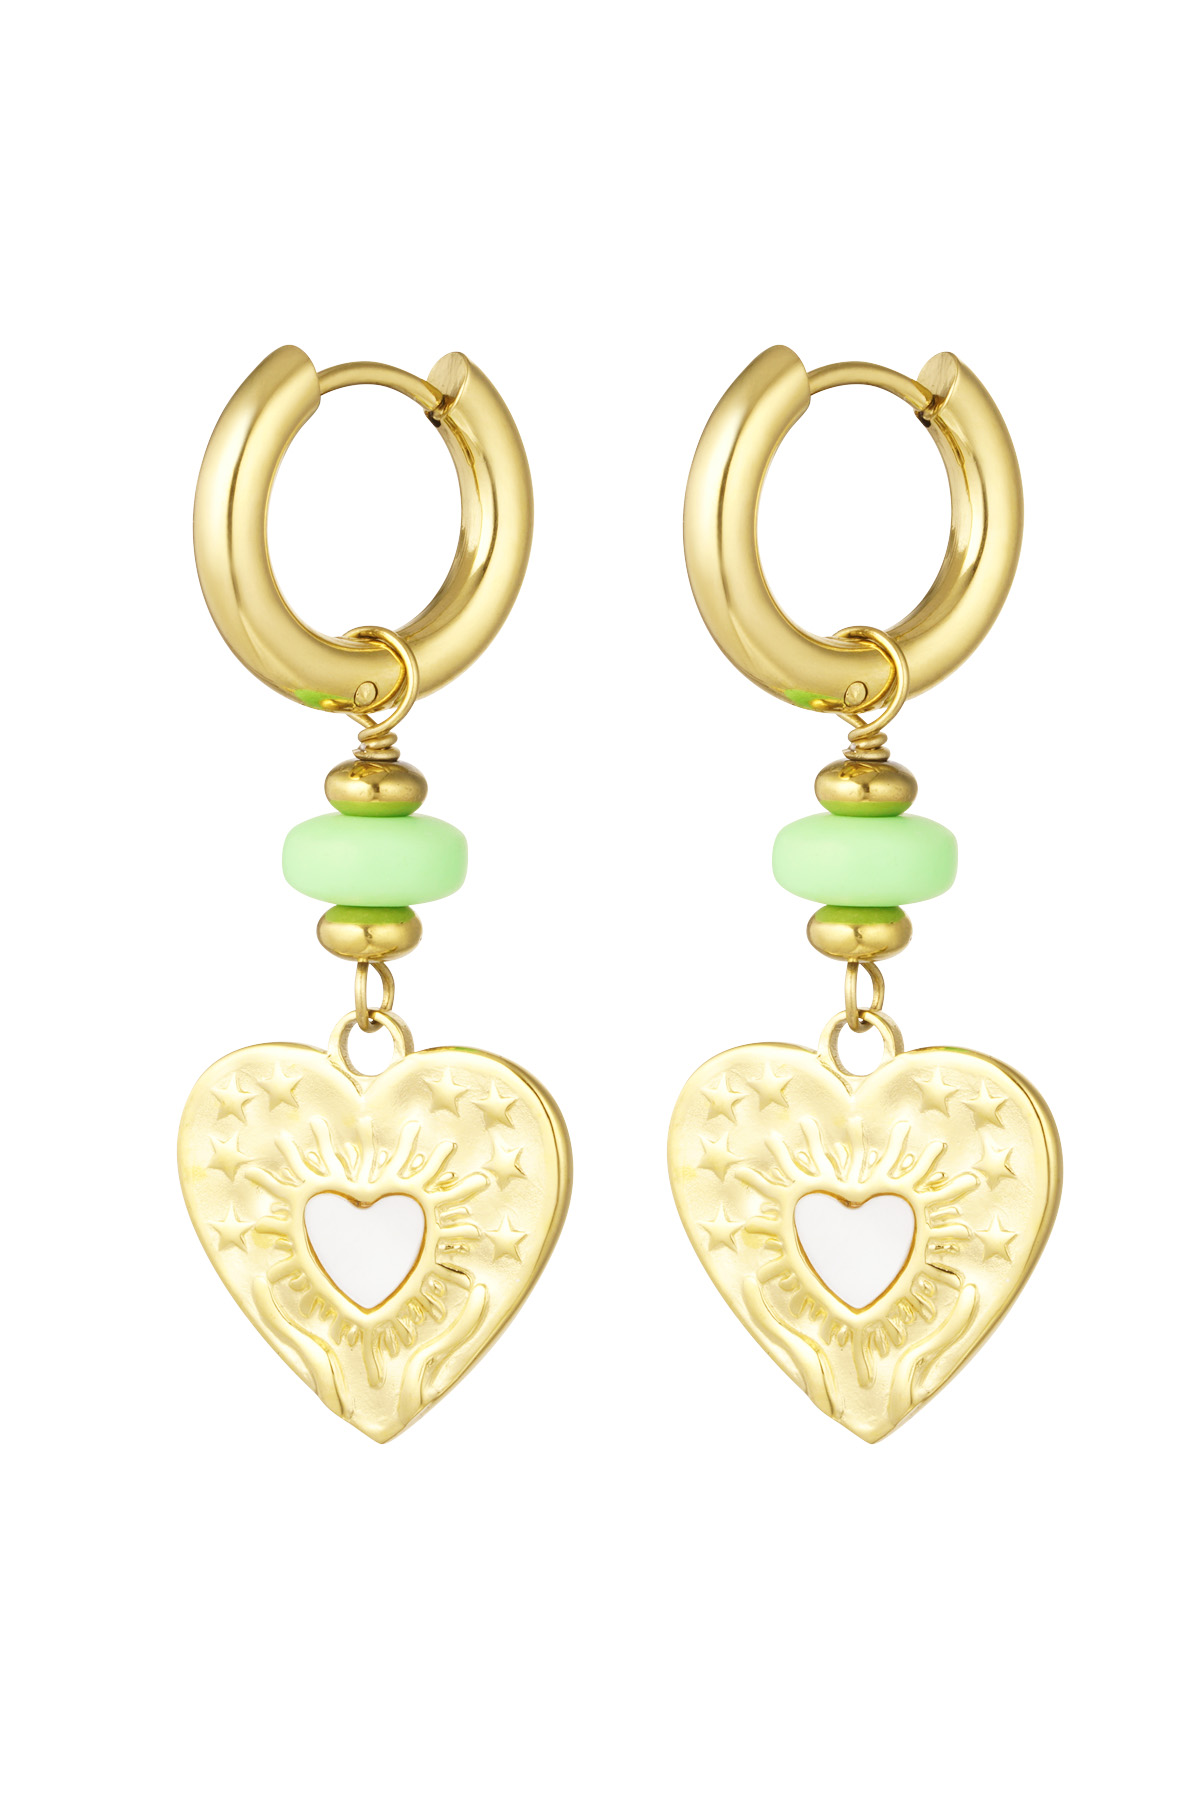 Orecchini cuore moneta con perlina verde - oro/verde 